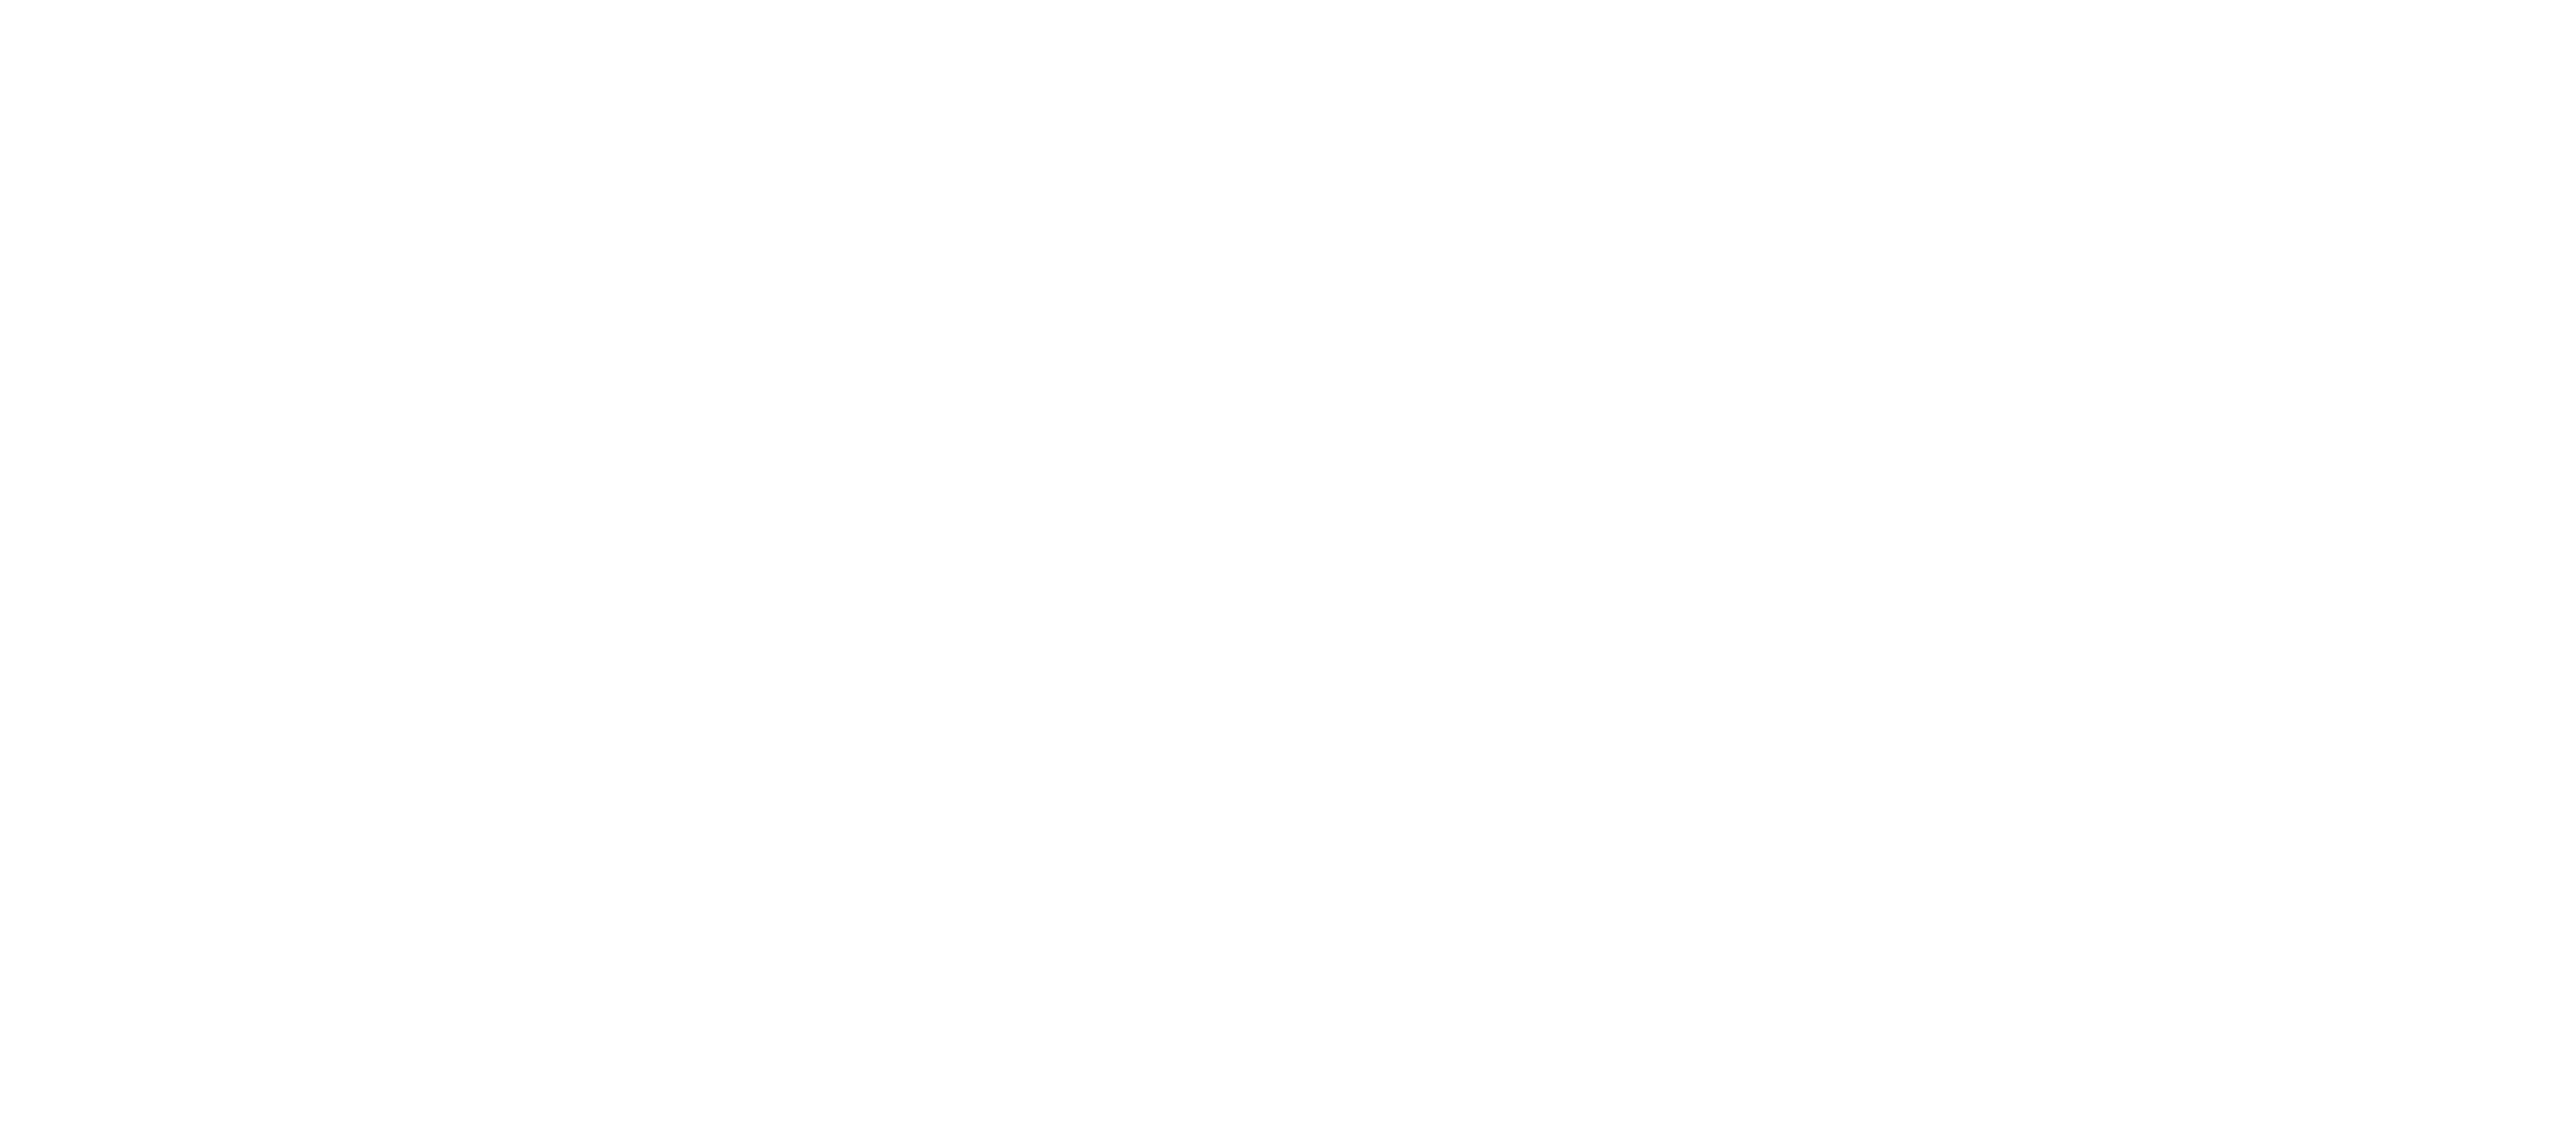 Alan Turing Institute